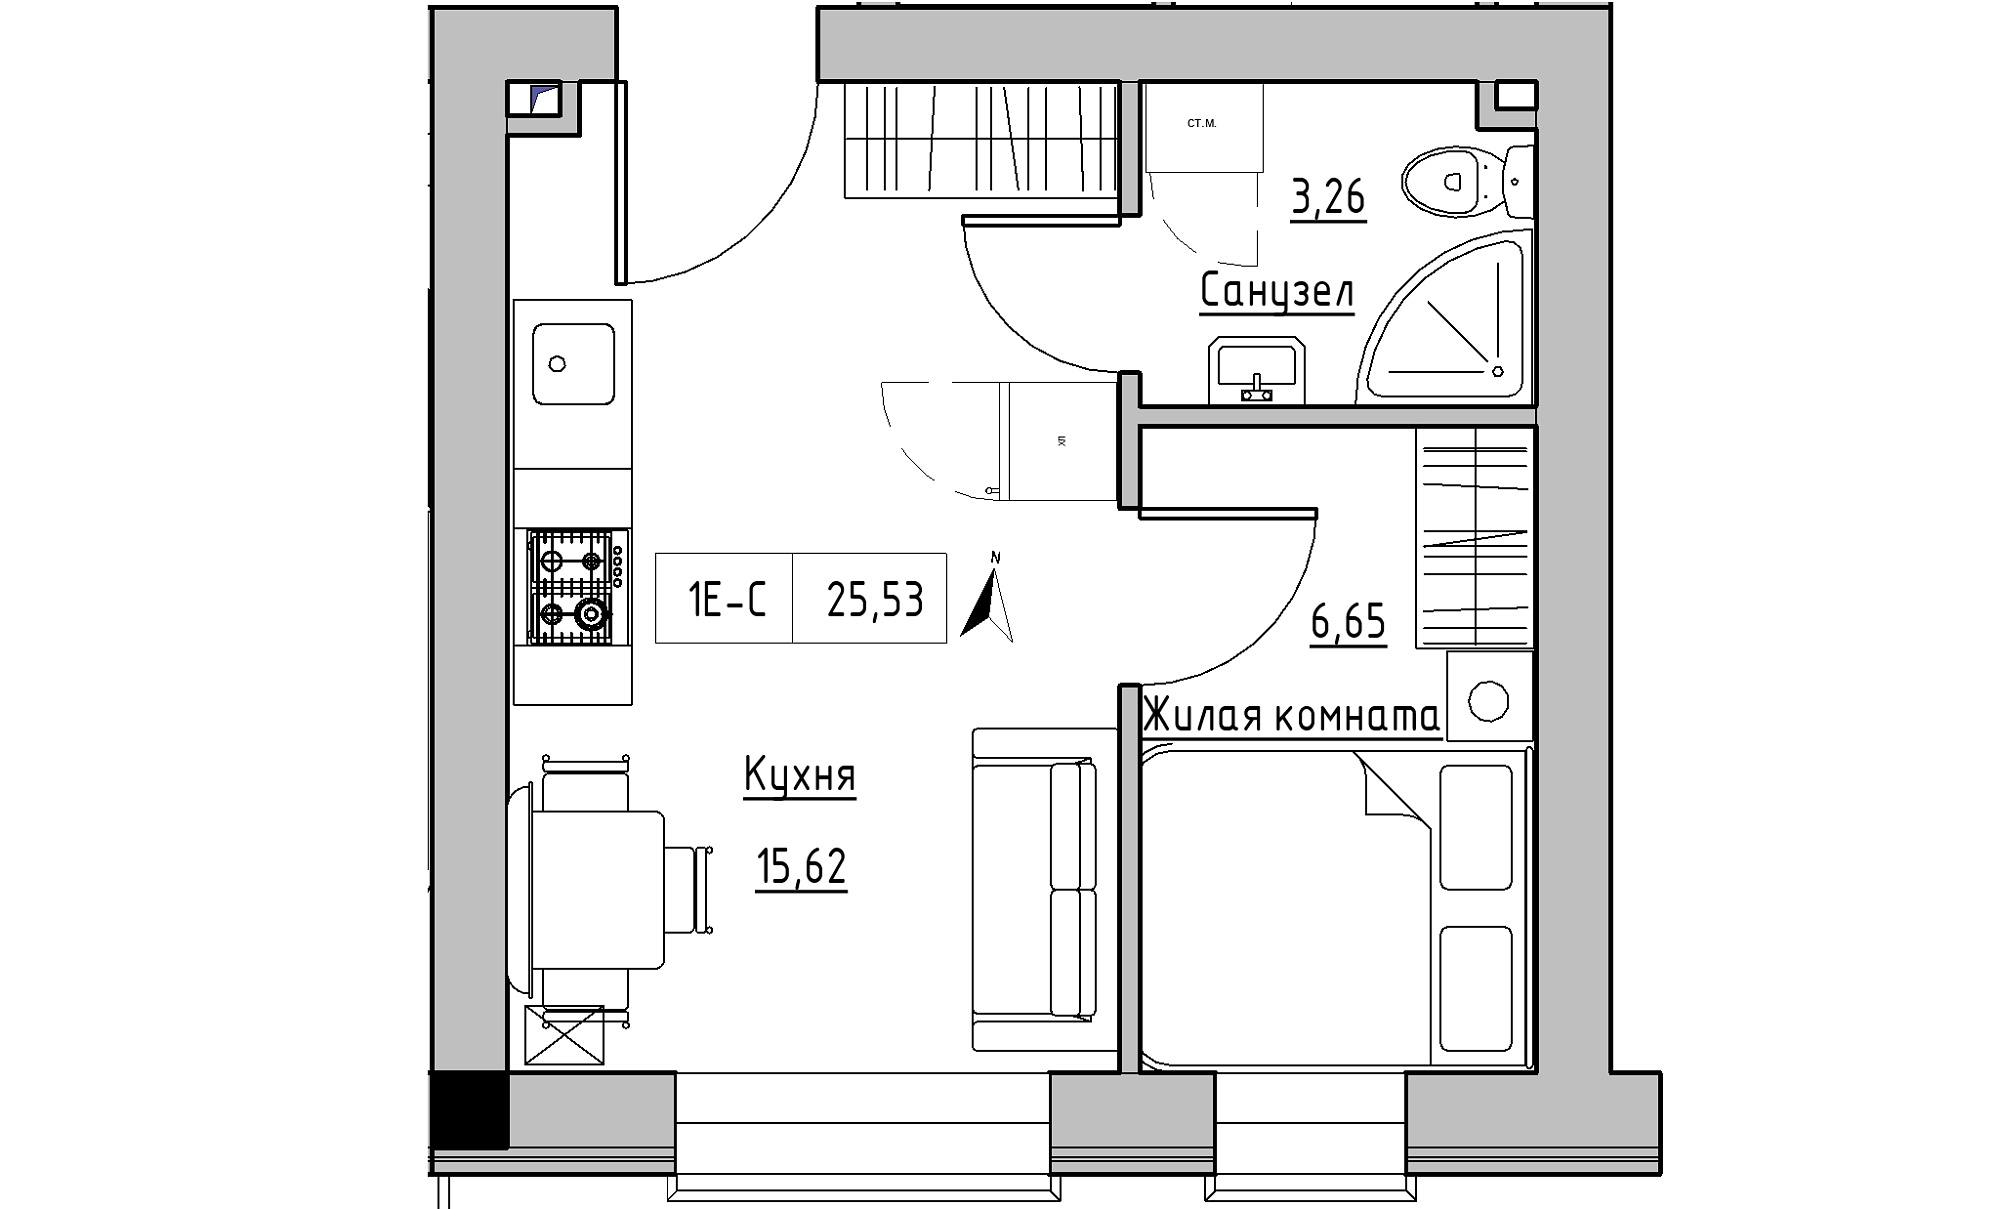 Планування 1-к квартира площею 25.53м2, KS-016-03/0004.